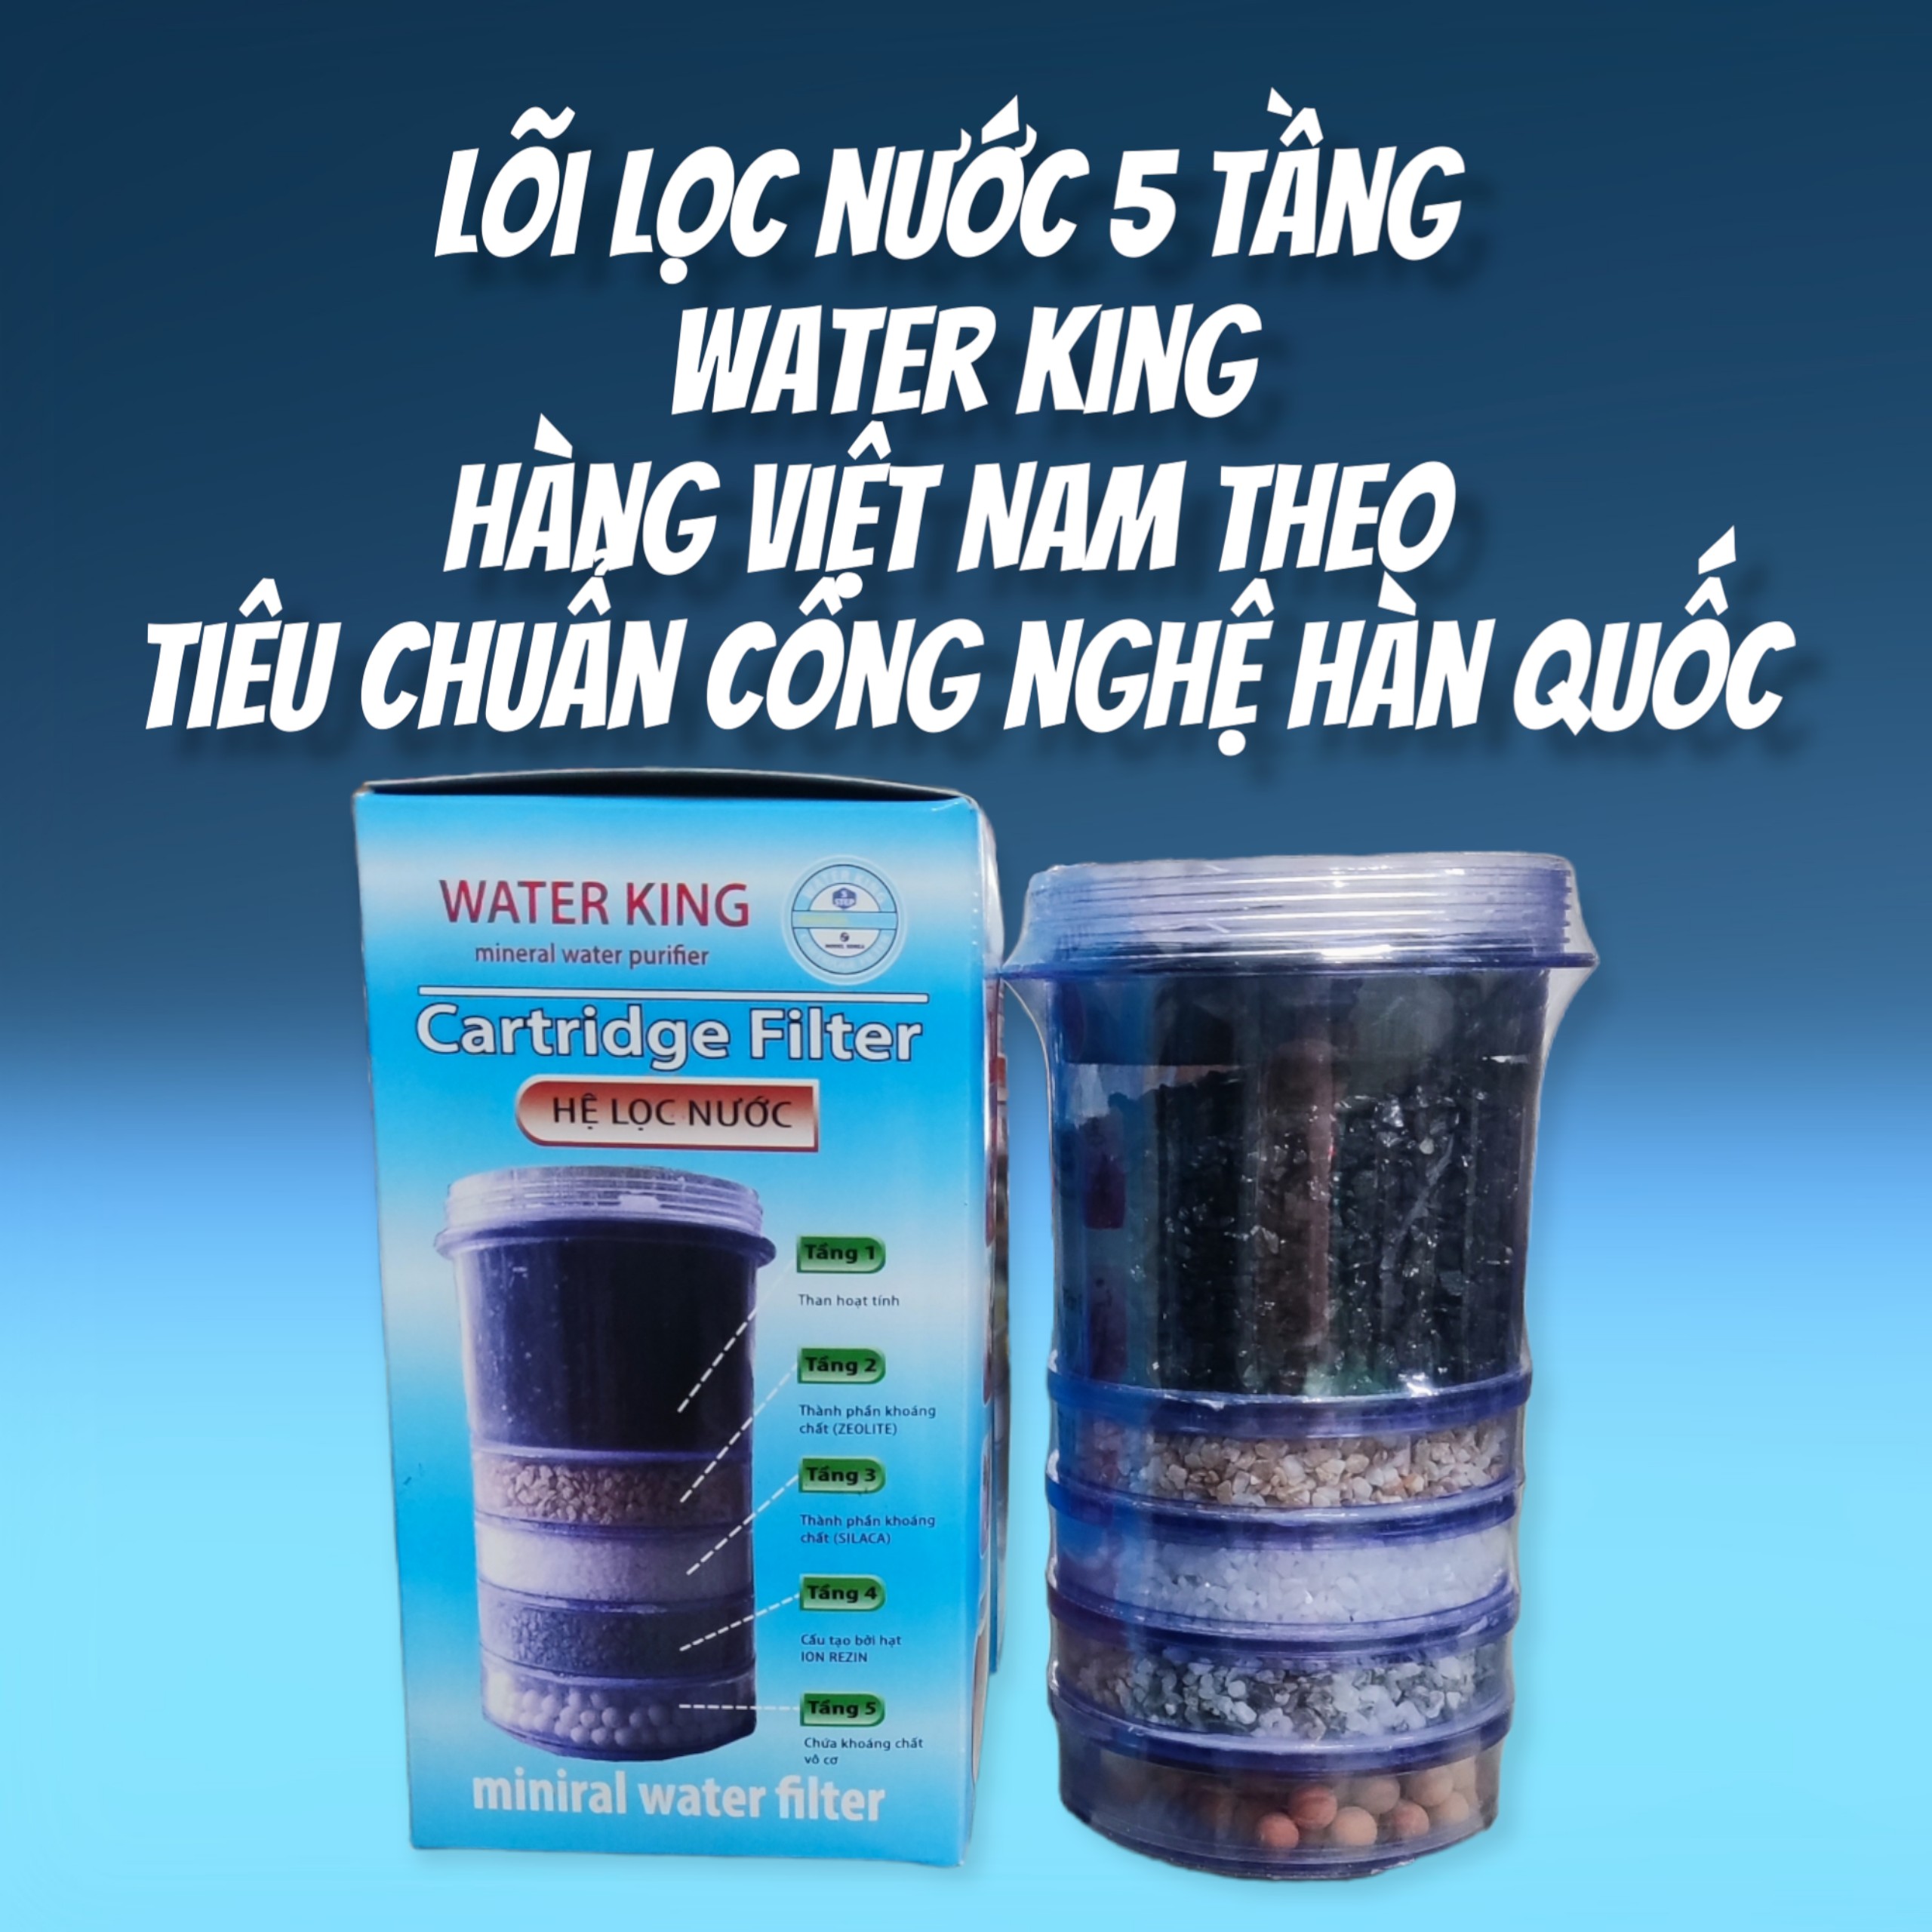 Lõi lọc nước 5 tầng Water King - Hàng Việt Nam sản xuất theo tiêu chuẩn Hàn Quốc